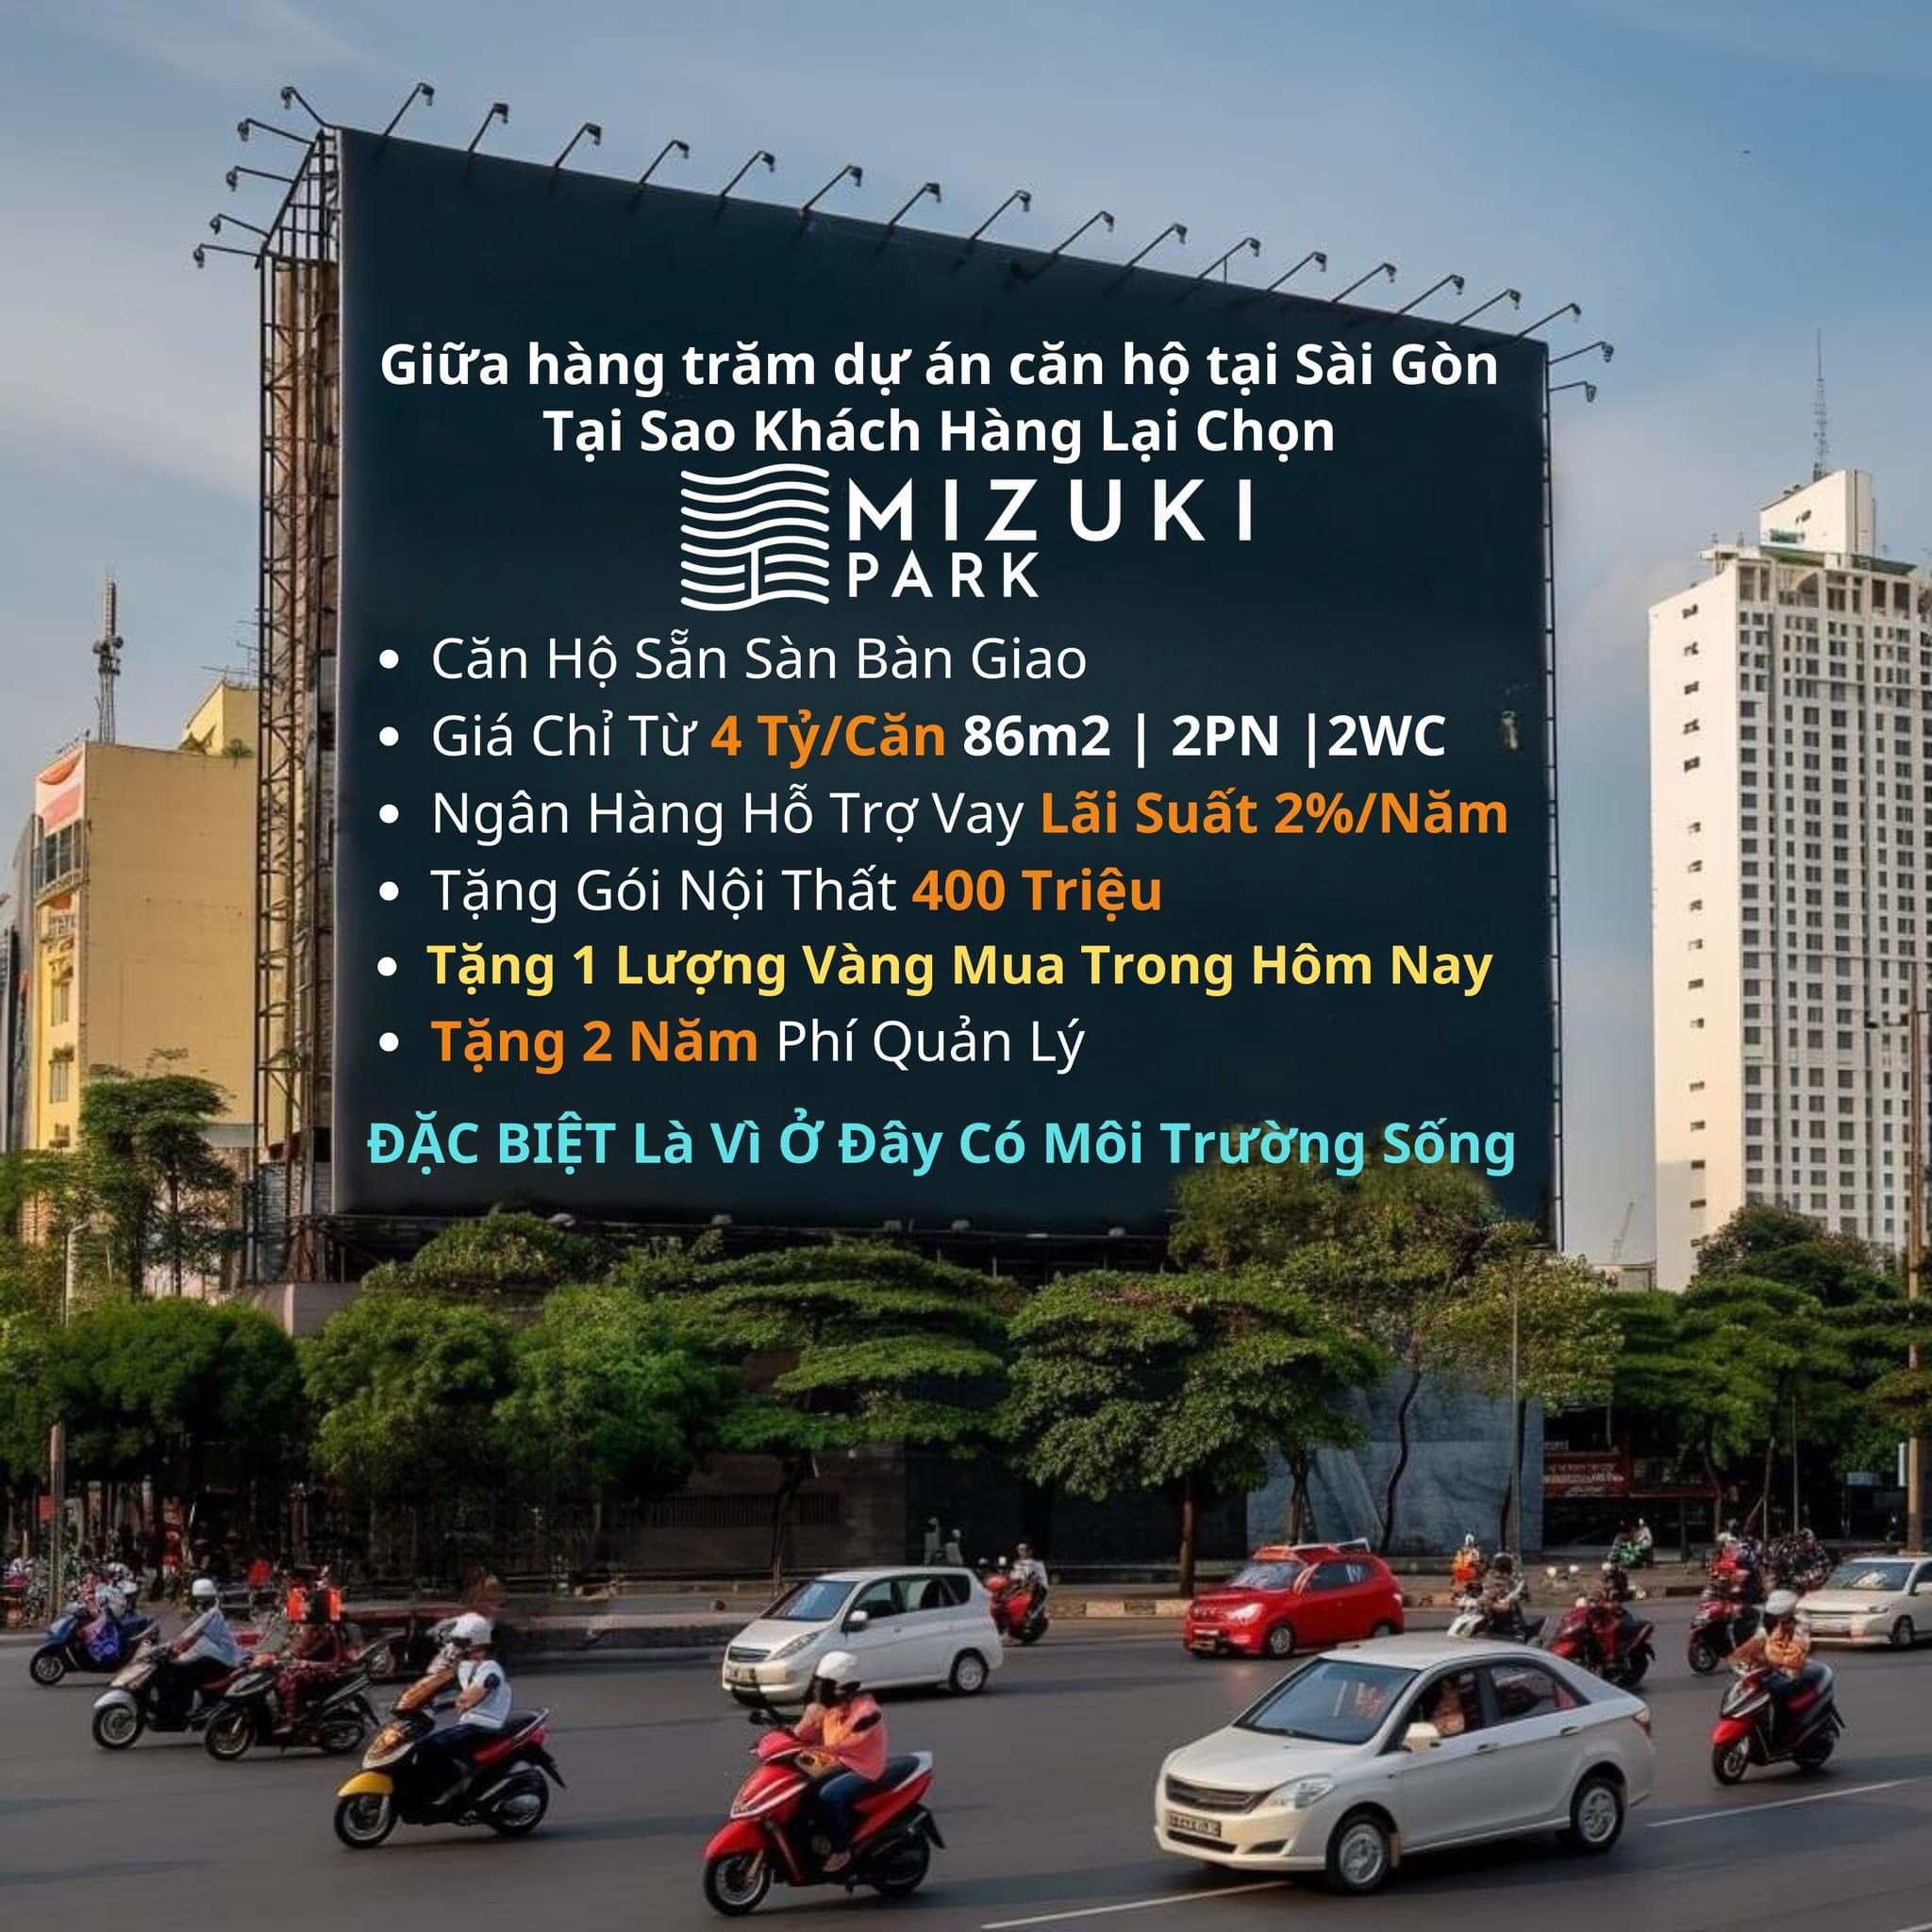 Chính sách bán hàng tại Khu đô thị Mizuki Park Nam Sài Gòn - Ảnh 1